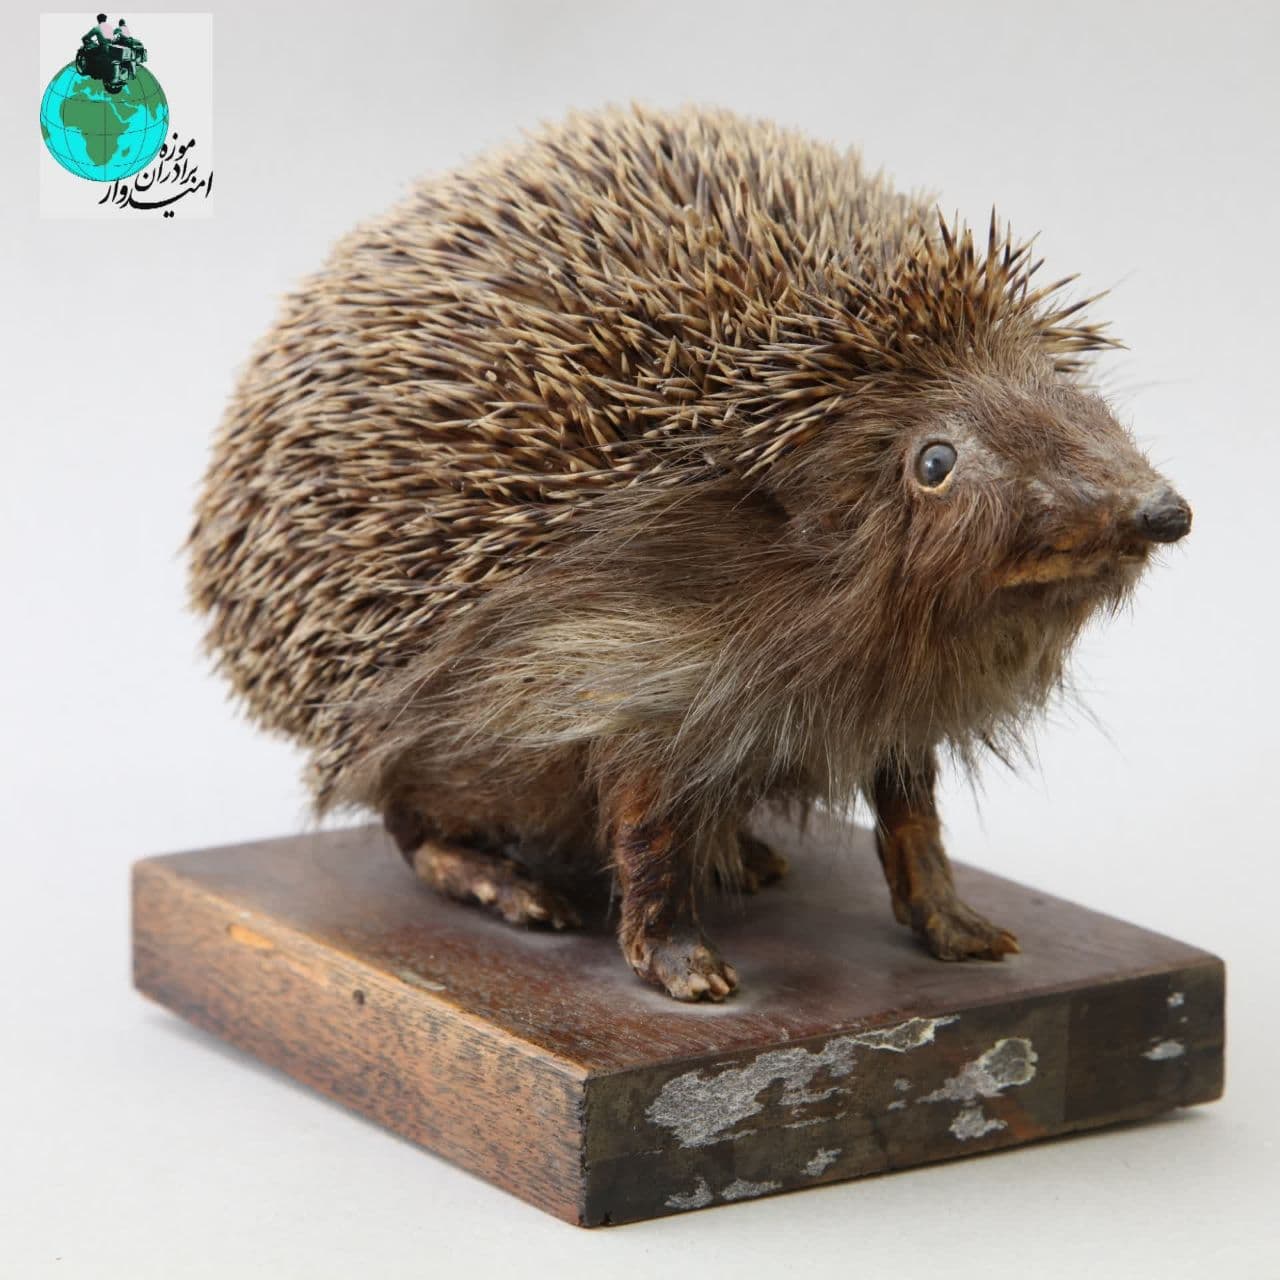 نام شی: خار پشت Hedgehog  مکان نمایش: گالری دوم موزه برادران امیدوار